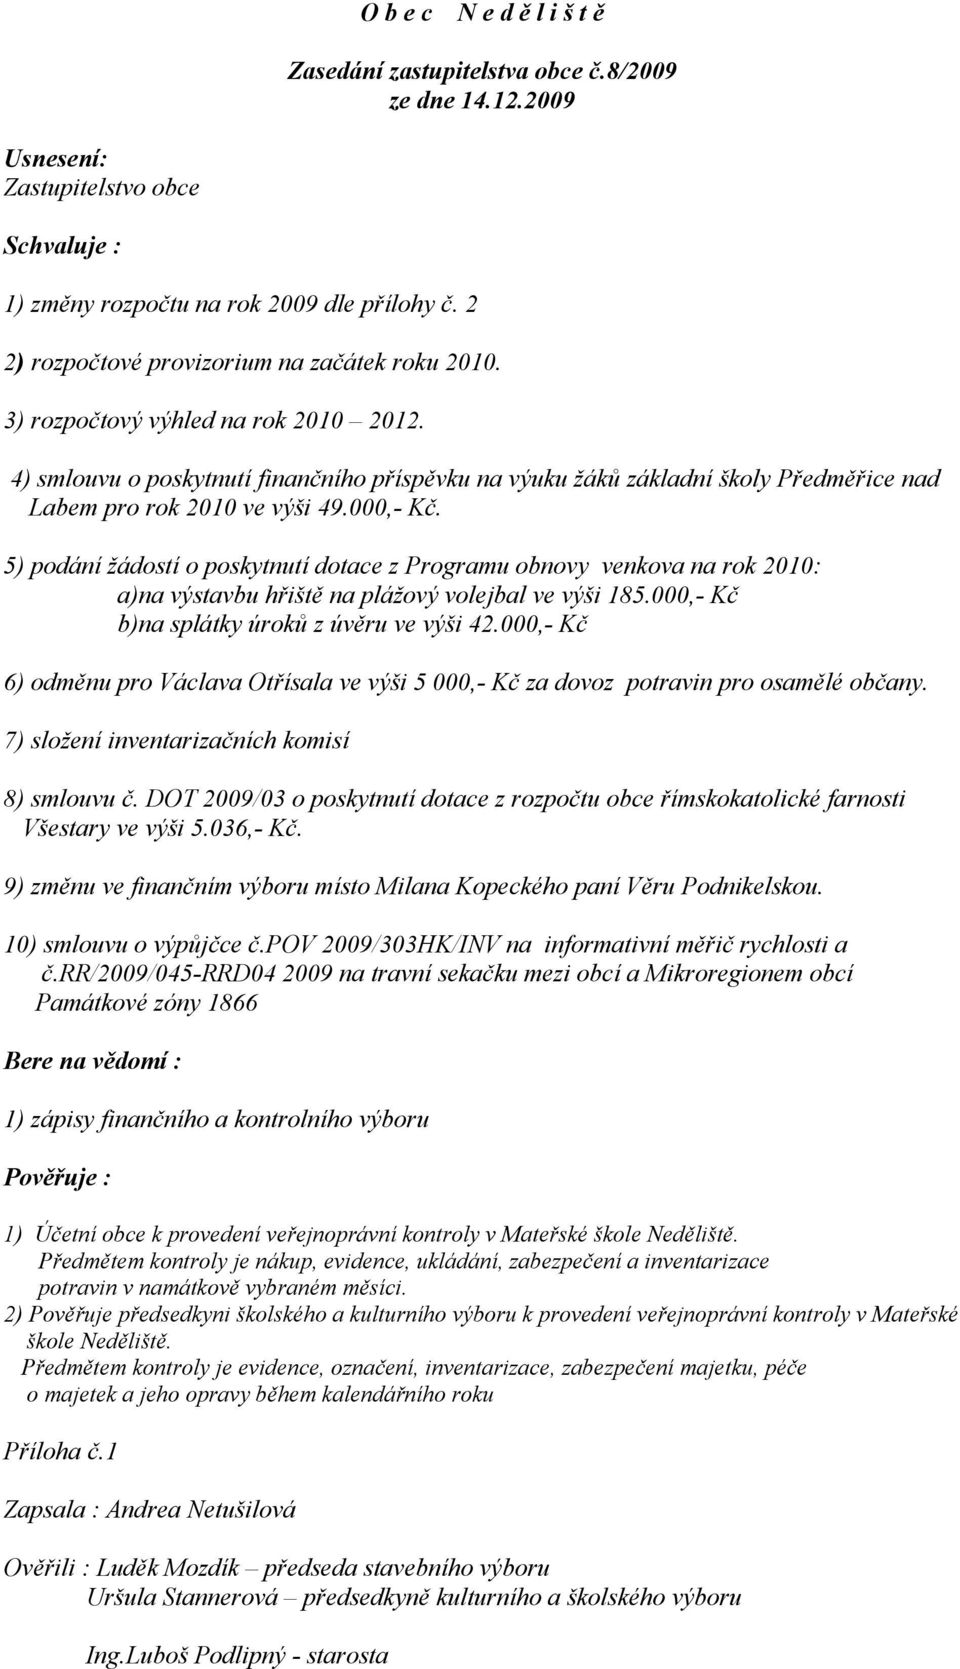 4) smlouvu o poskytnutí finančního příspěvku na výuku žáků základní školy Předměřice nad Labem pro rok 2010 ve výši 49.000,- Kč.